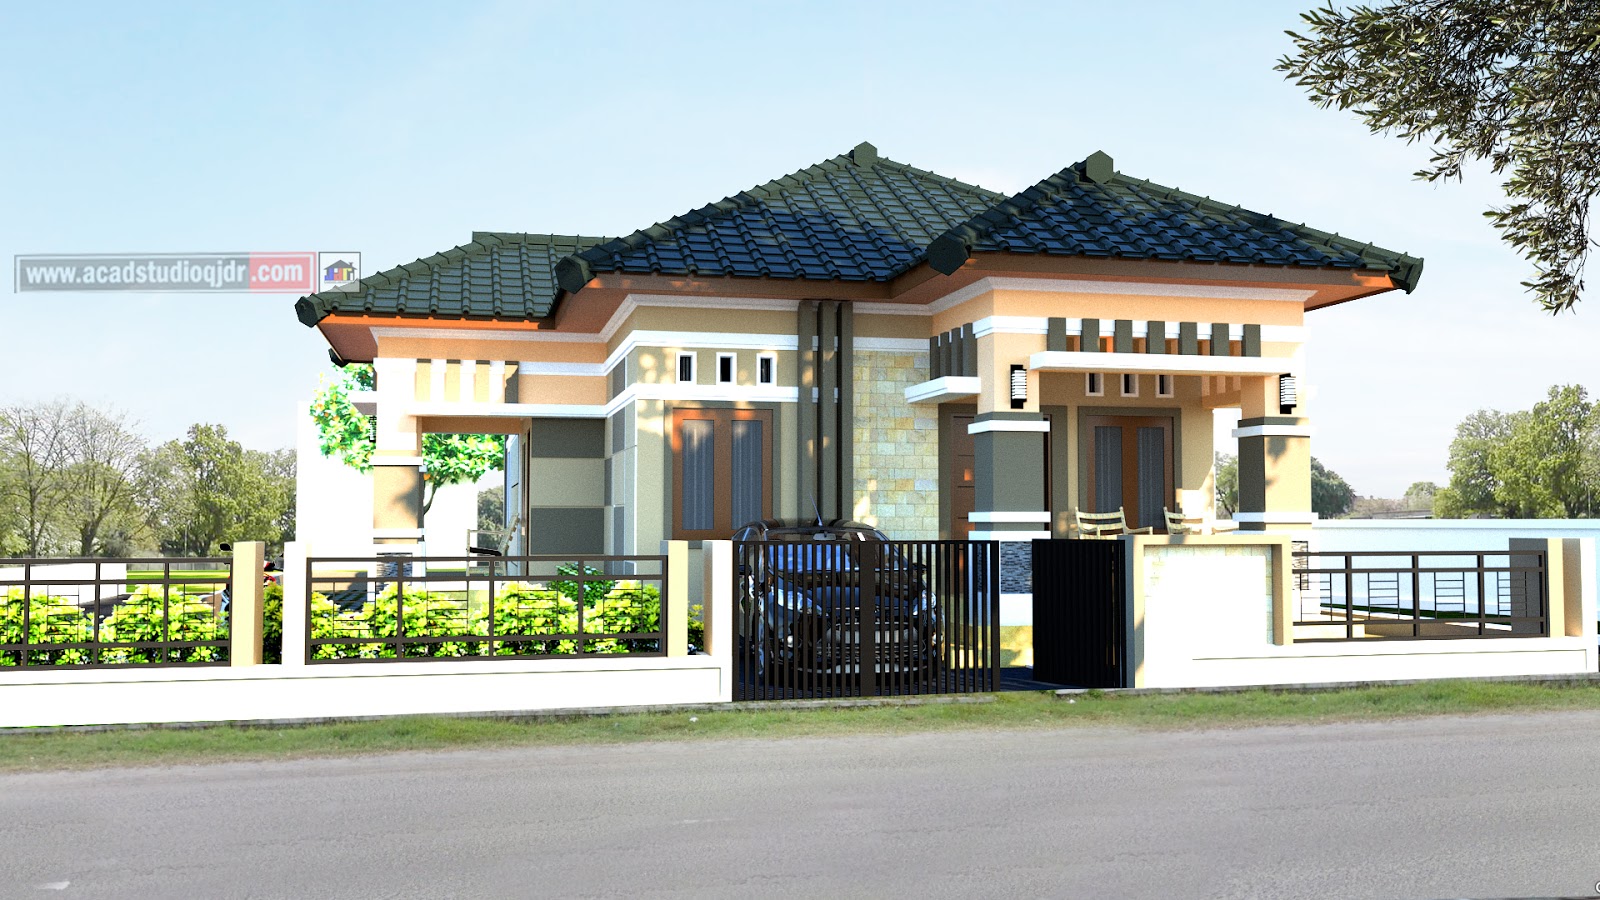  Desain  Rumah 1 Lantai  Lebar  7 Meter  Bpk Helmi Jasa 